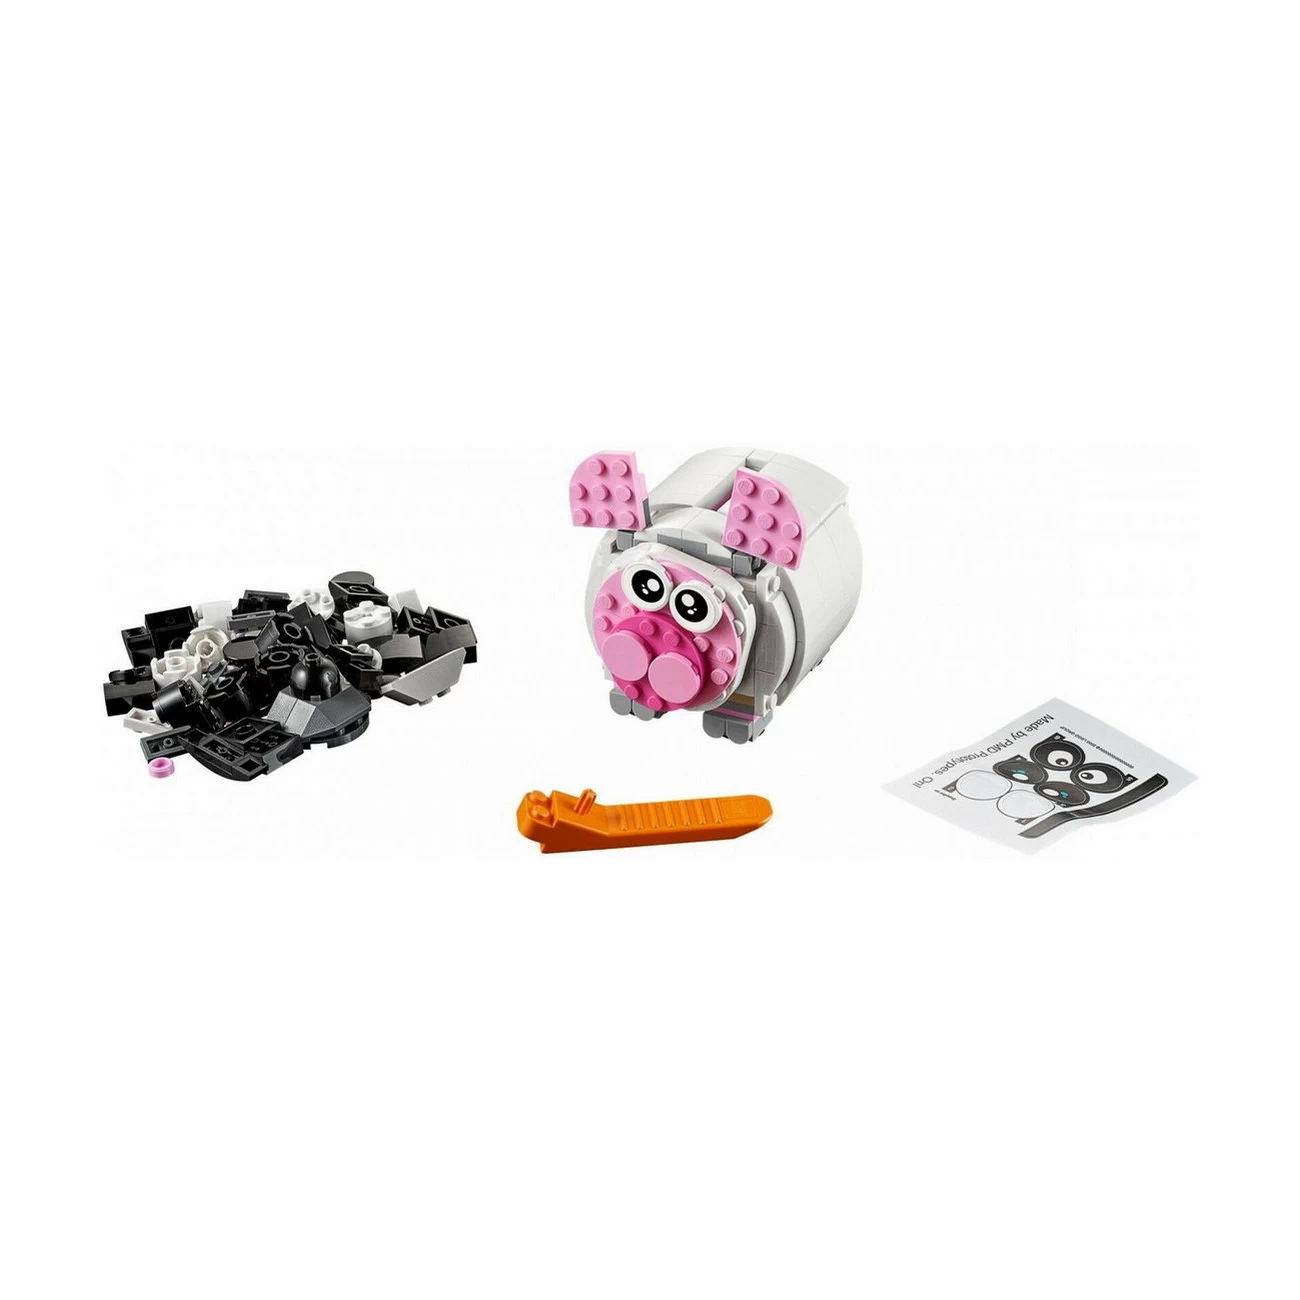 LEGO 40251 - Mini-Sparschwein - Limited Edition 2017